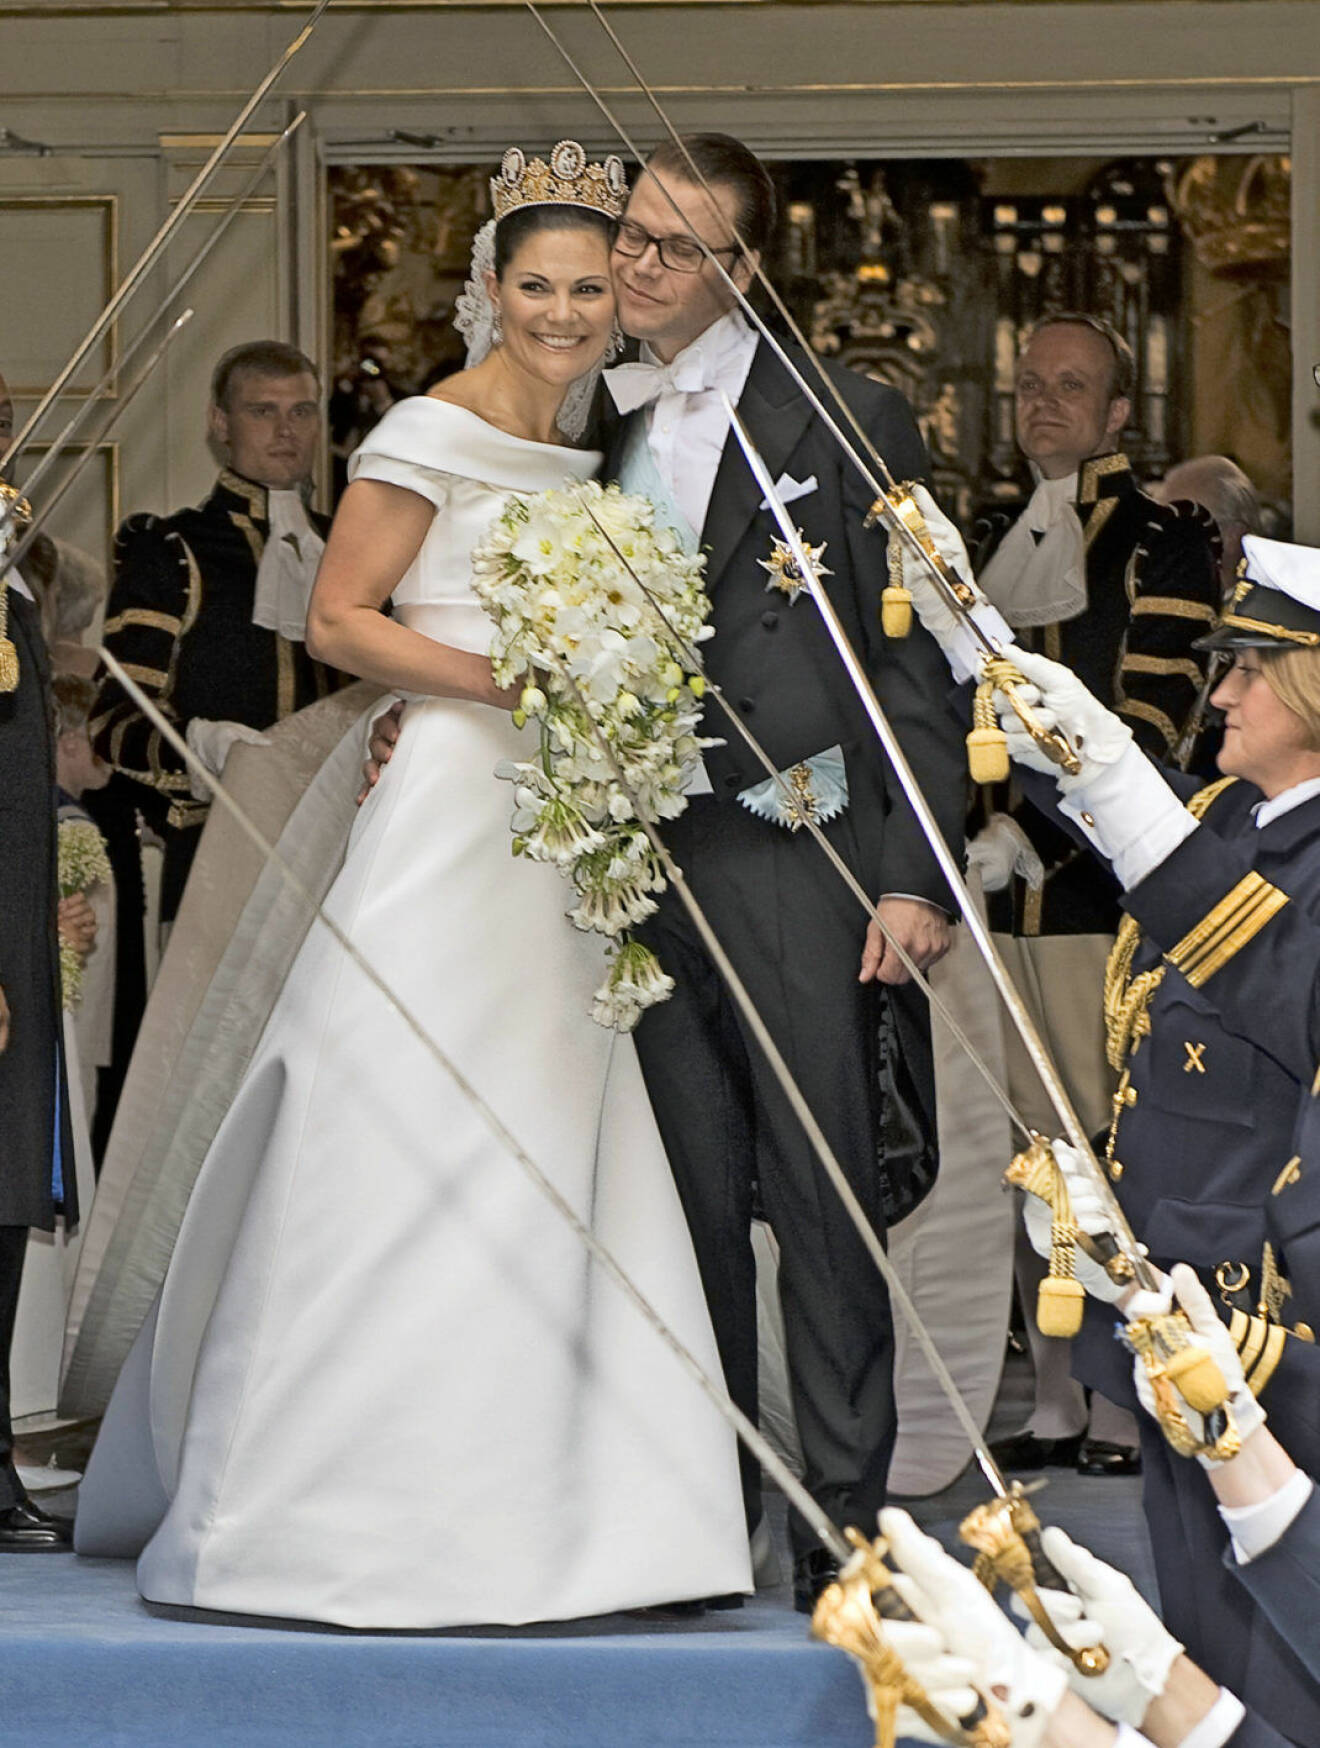 Samma sak var det för prins Daniel. Under bröllopet 2010 blev Daniel Westling prins och kronprinsessans följeslagare.